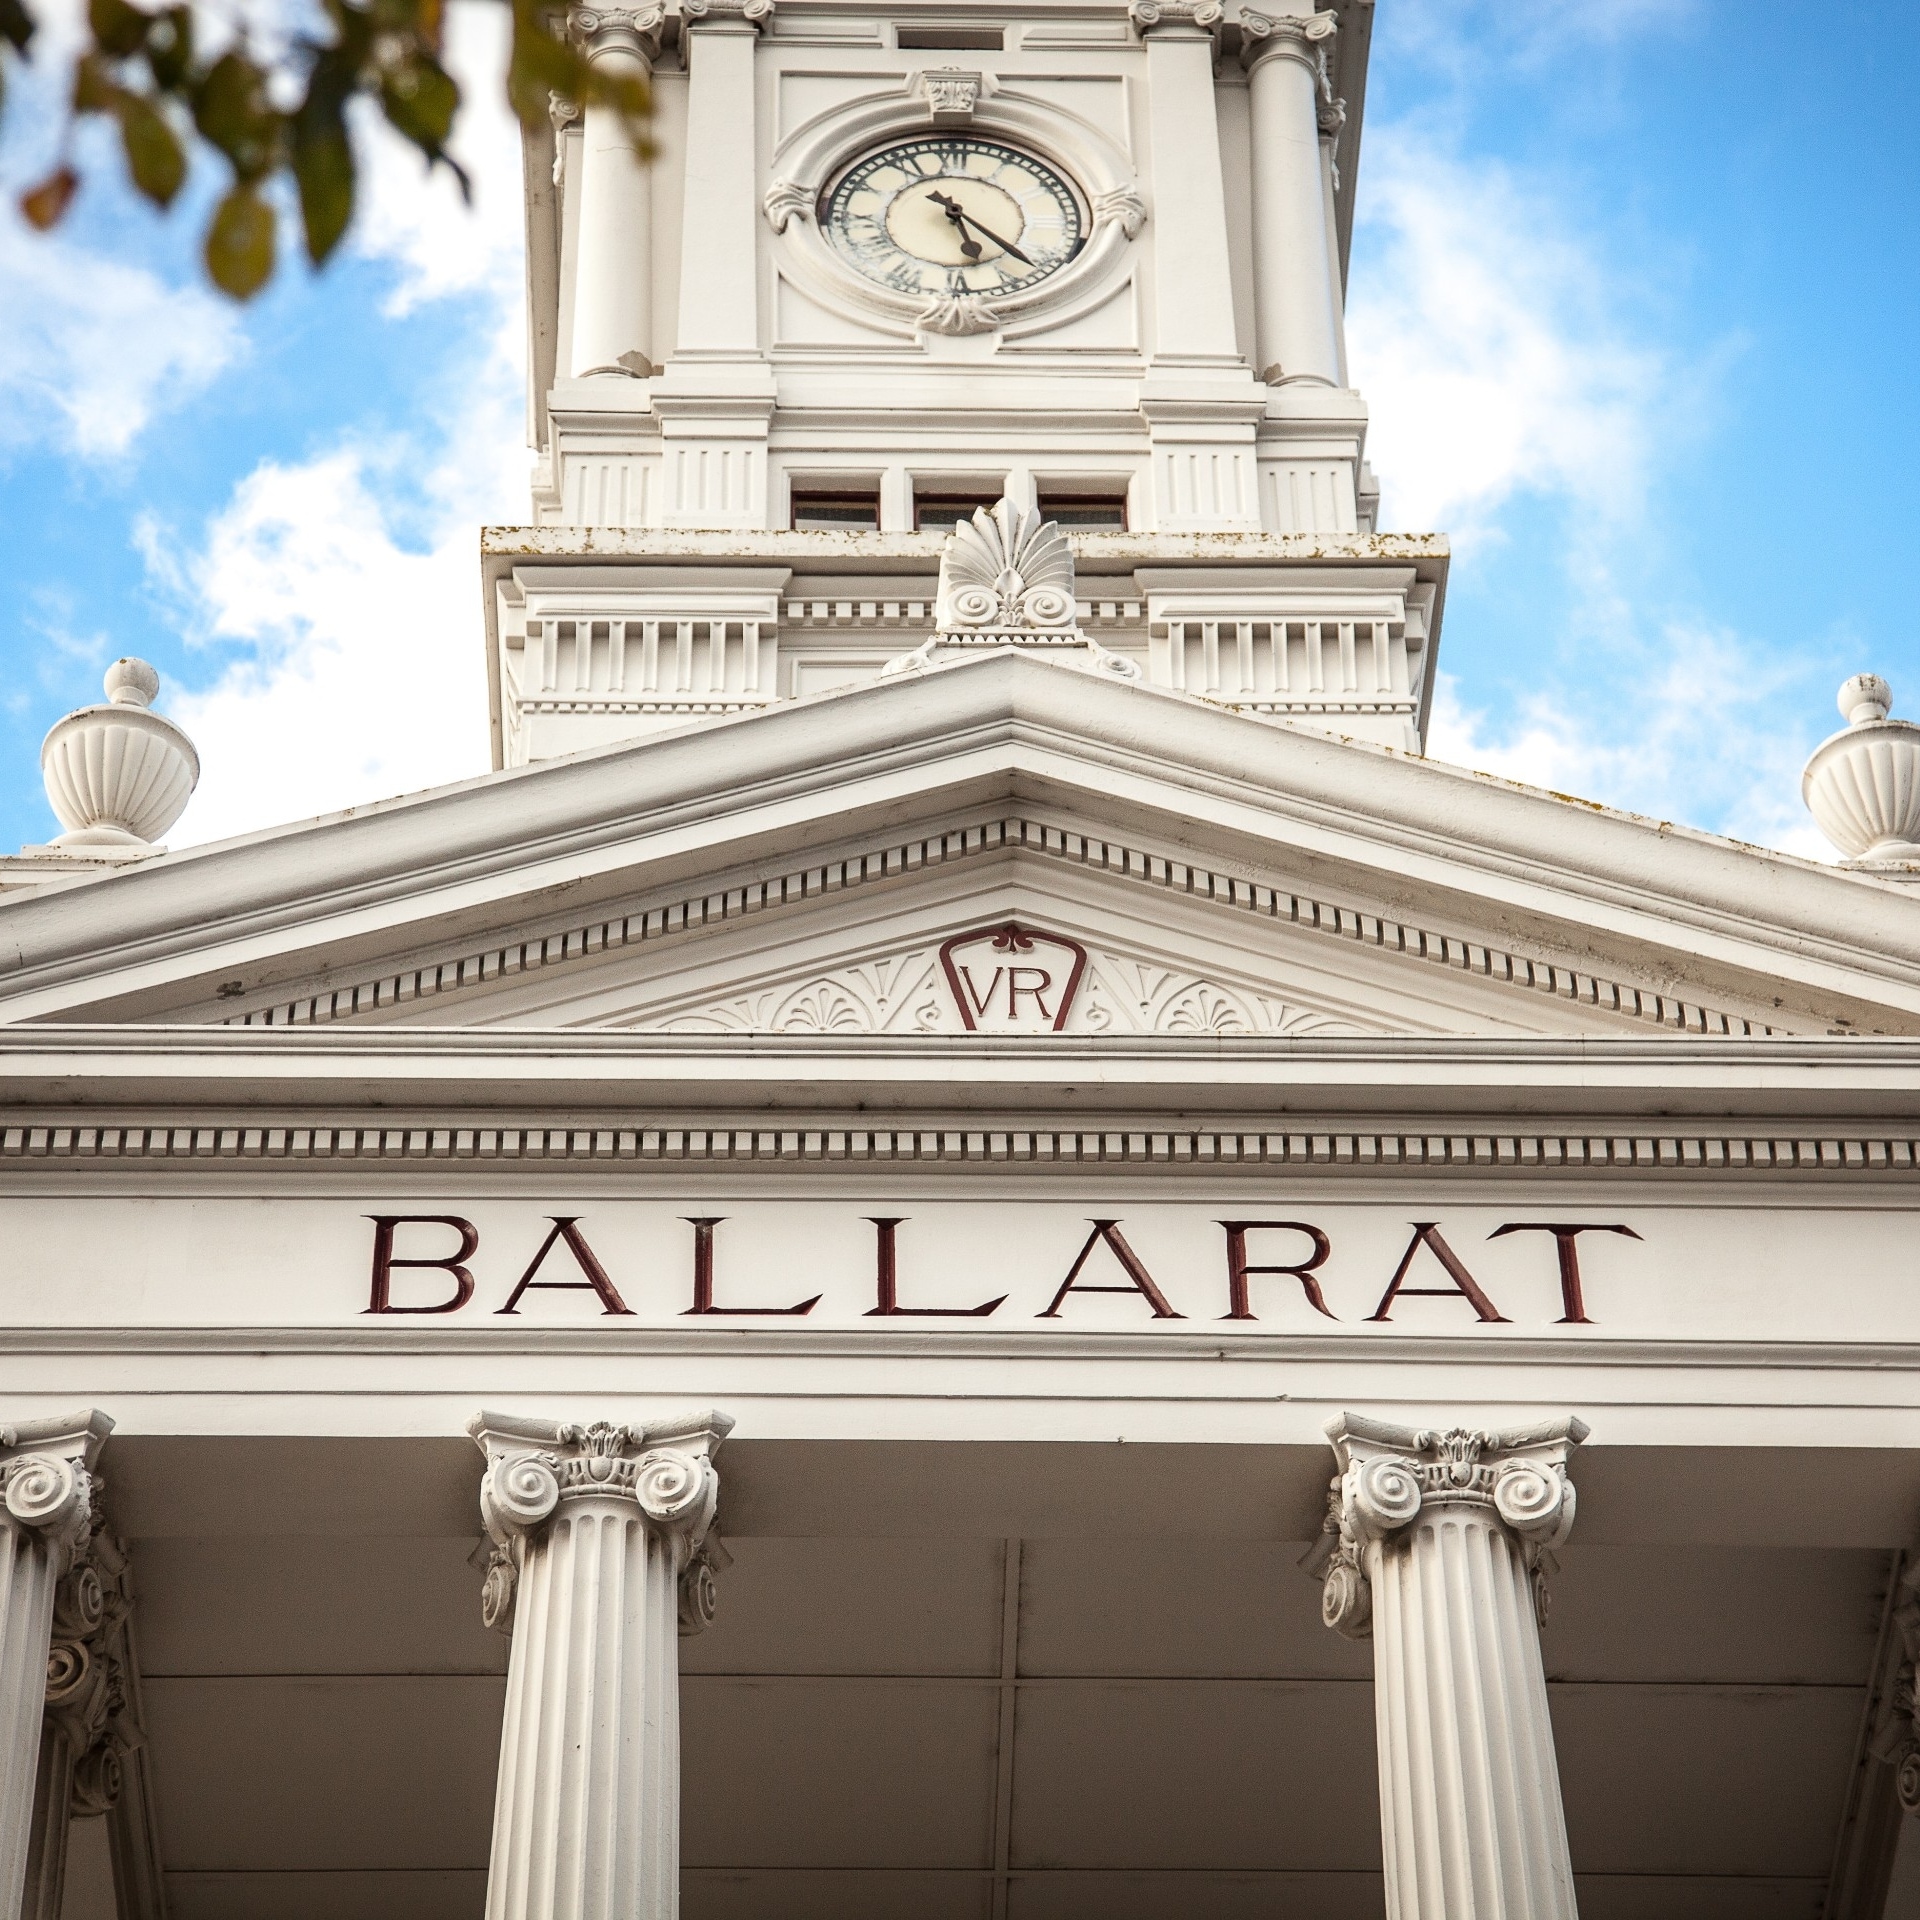 Ballarat Railway Station, Ballarat, VIC © Visit Victoria